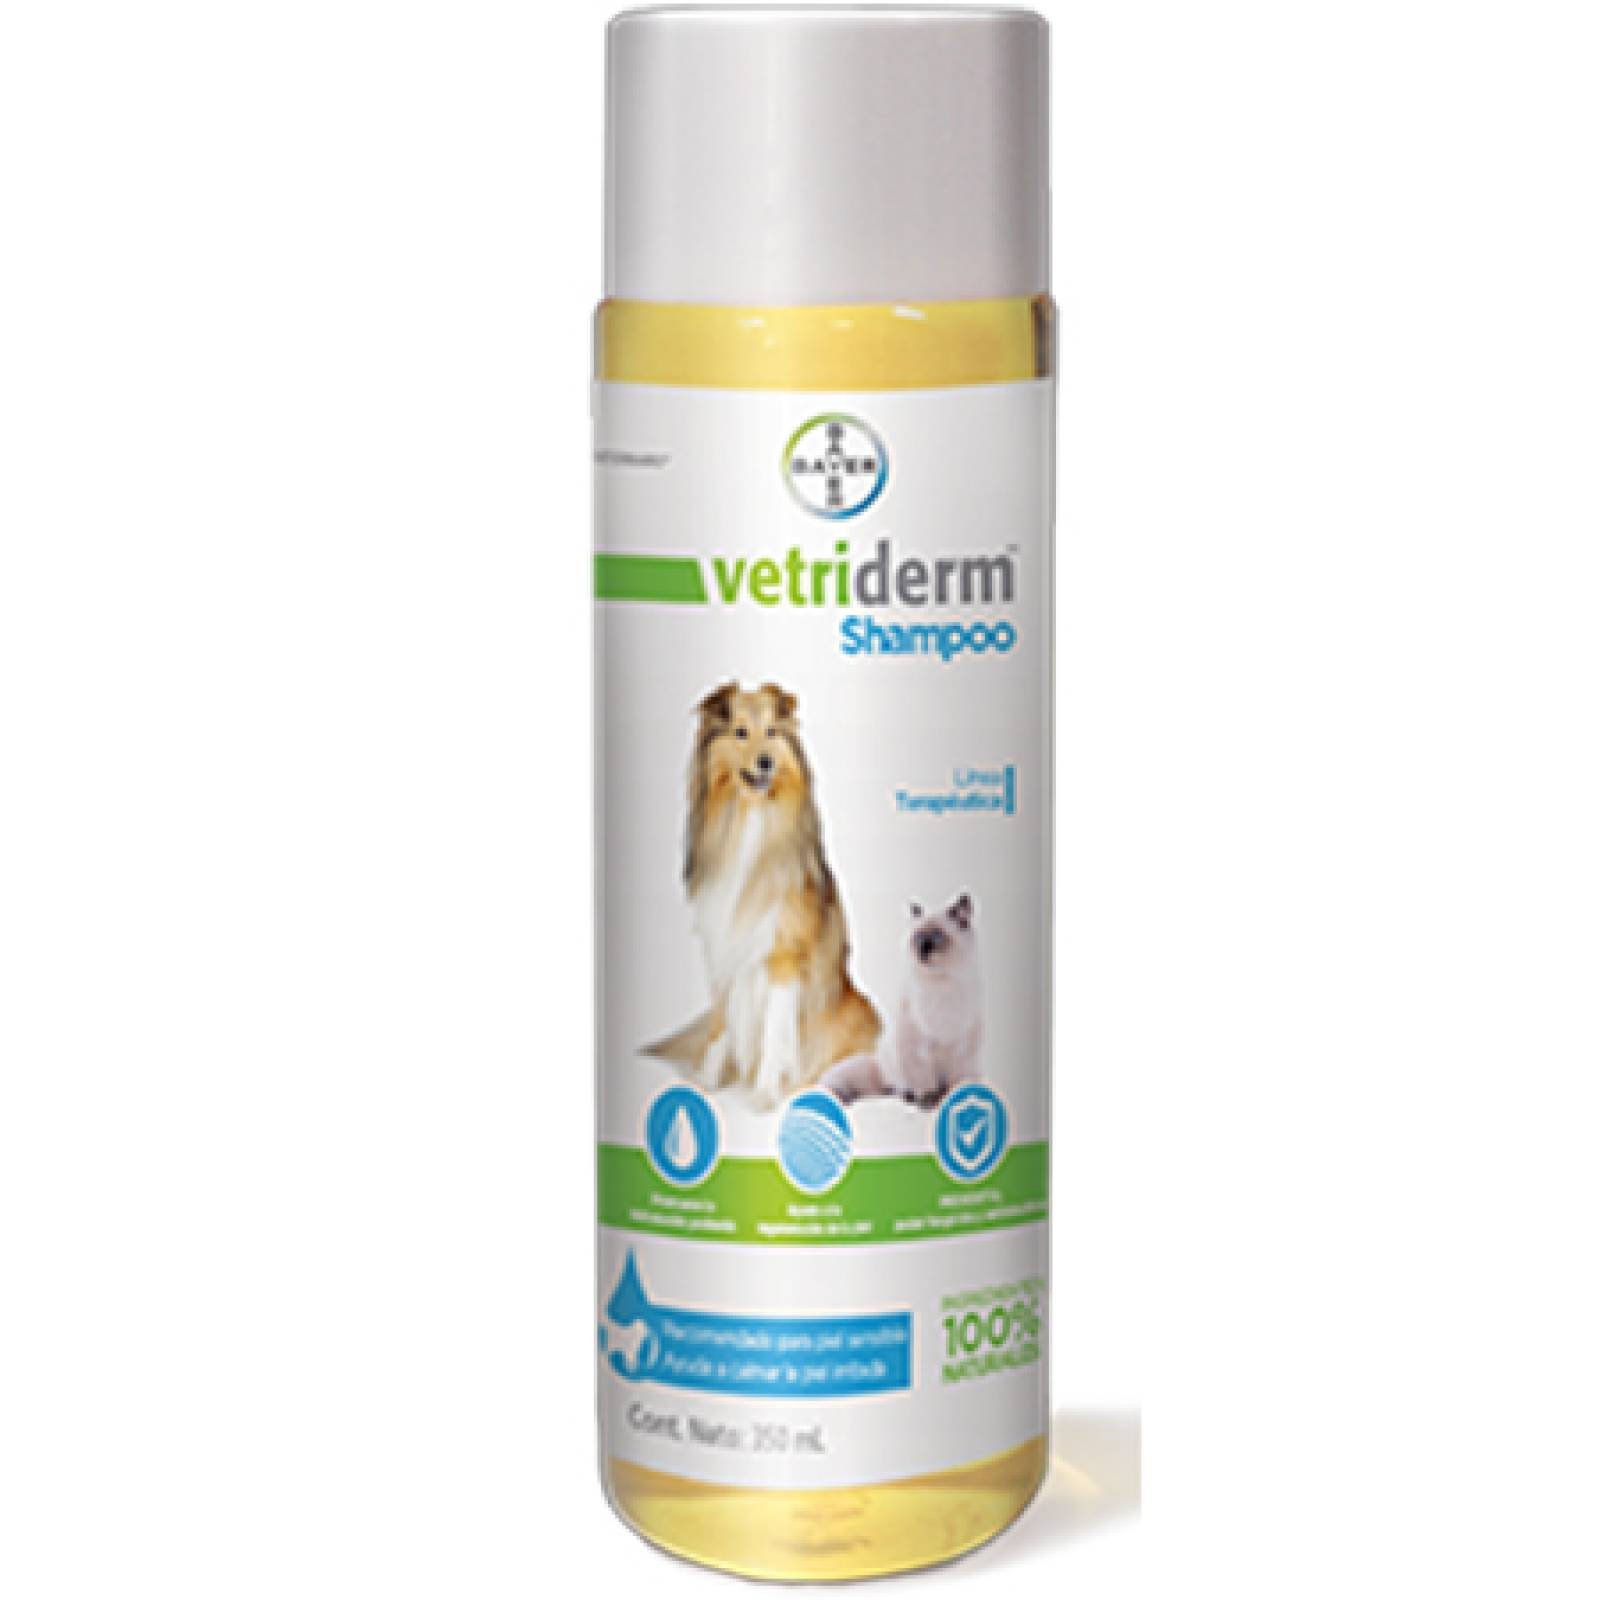 VETRIDERM Shampoo terapeutico para Perros y Gatos 350 ml